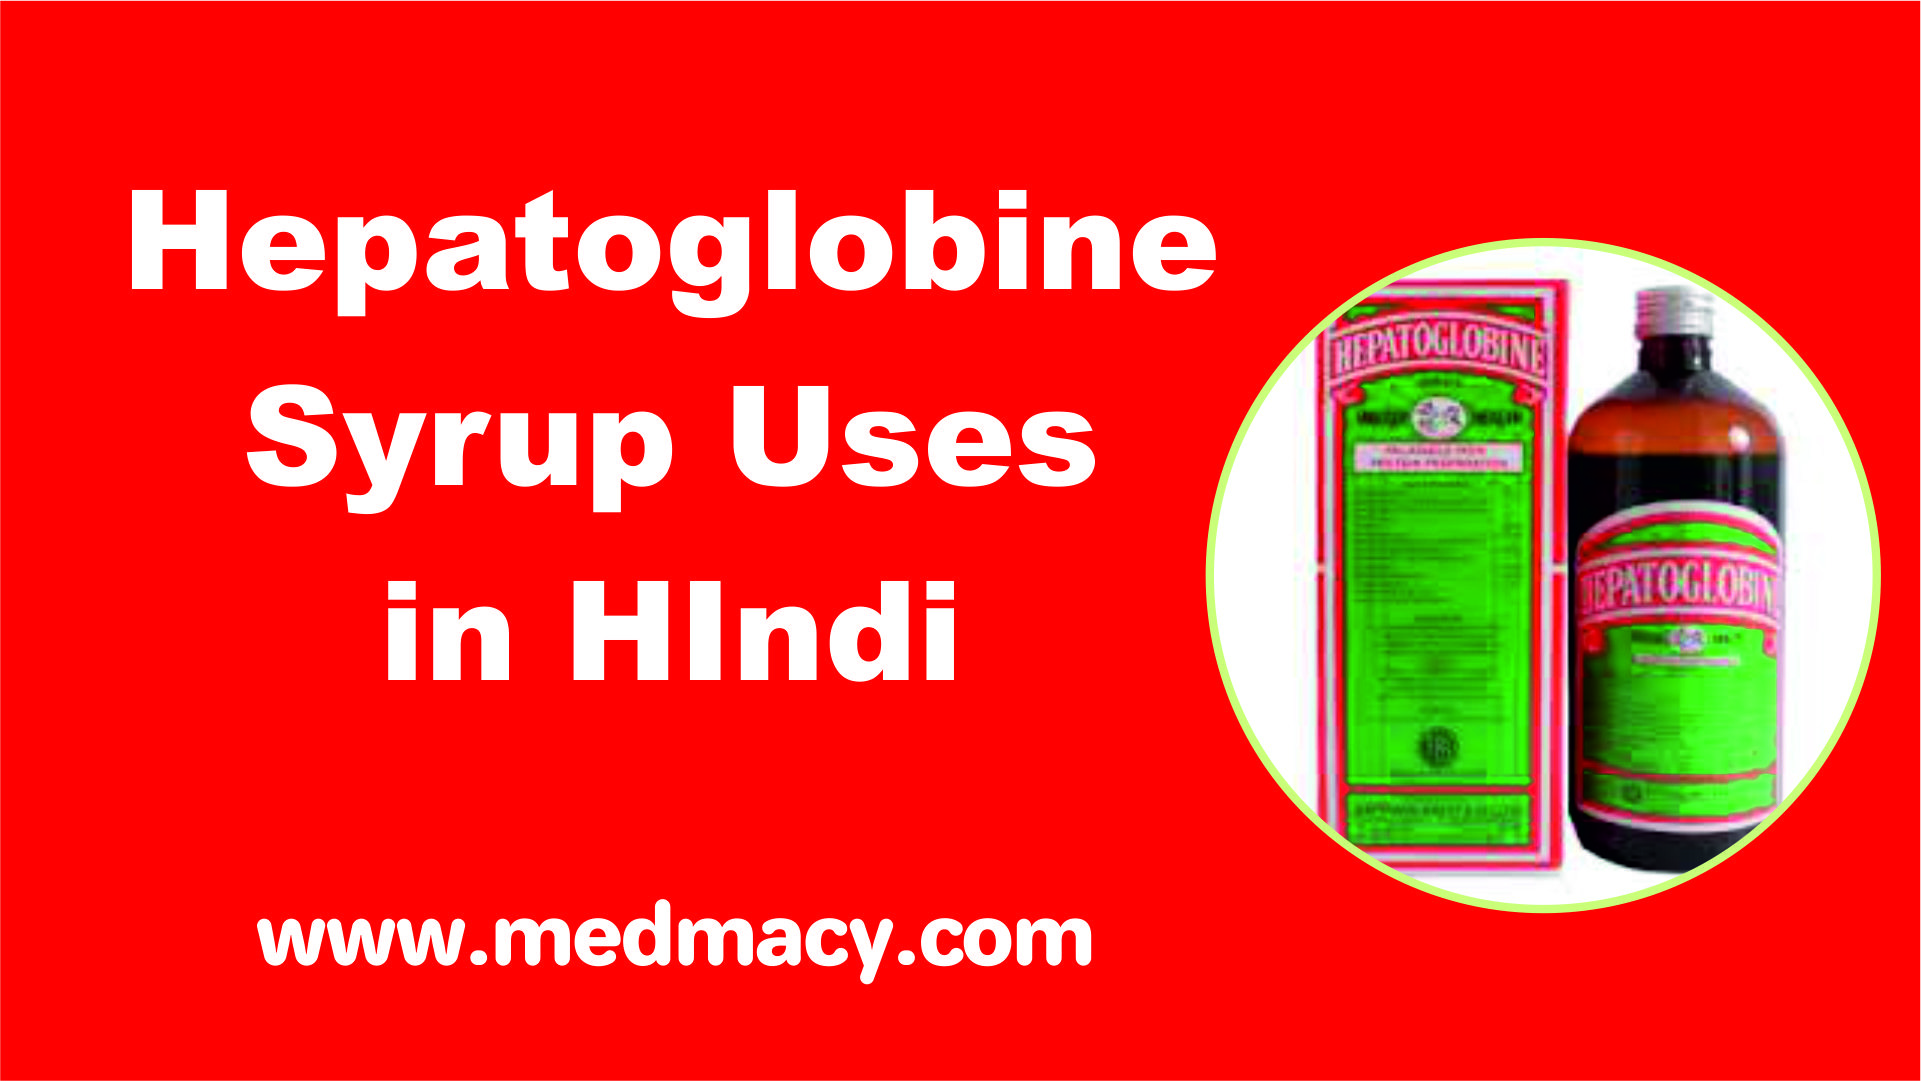 Hepatoglobine syrup uses in hindi